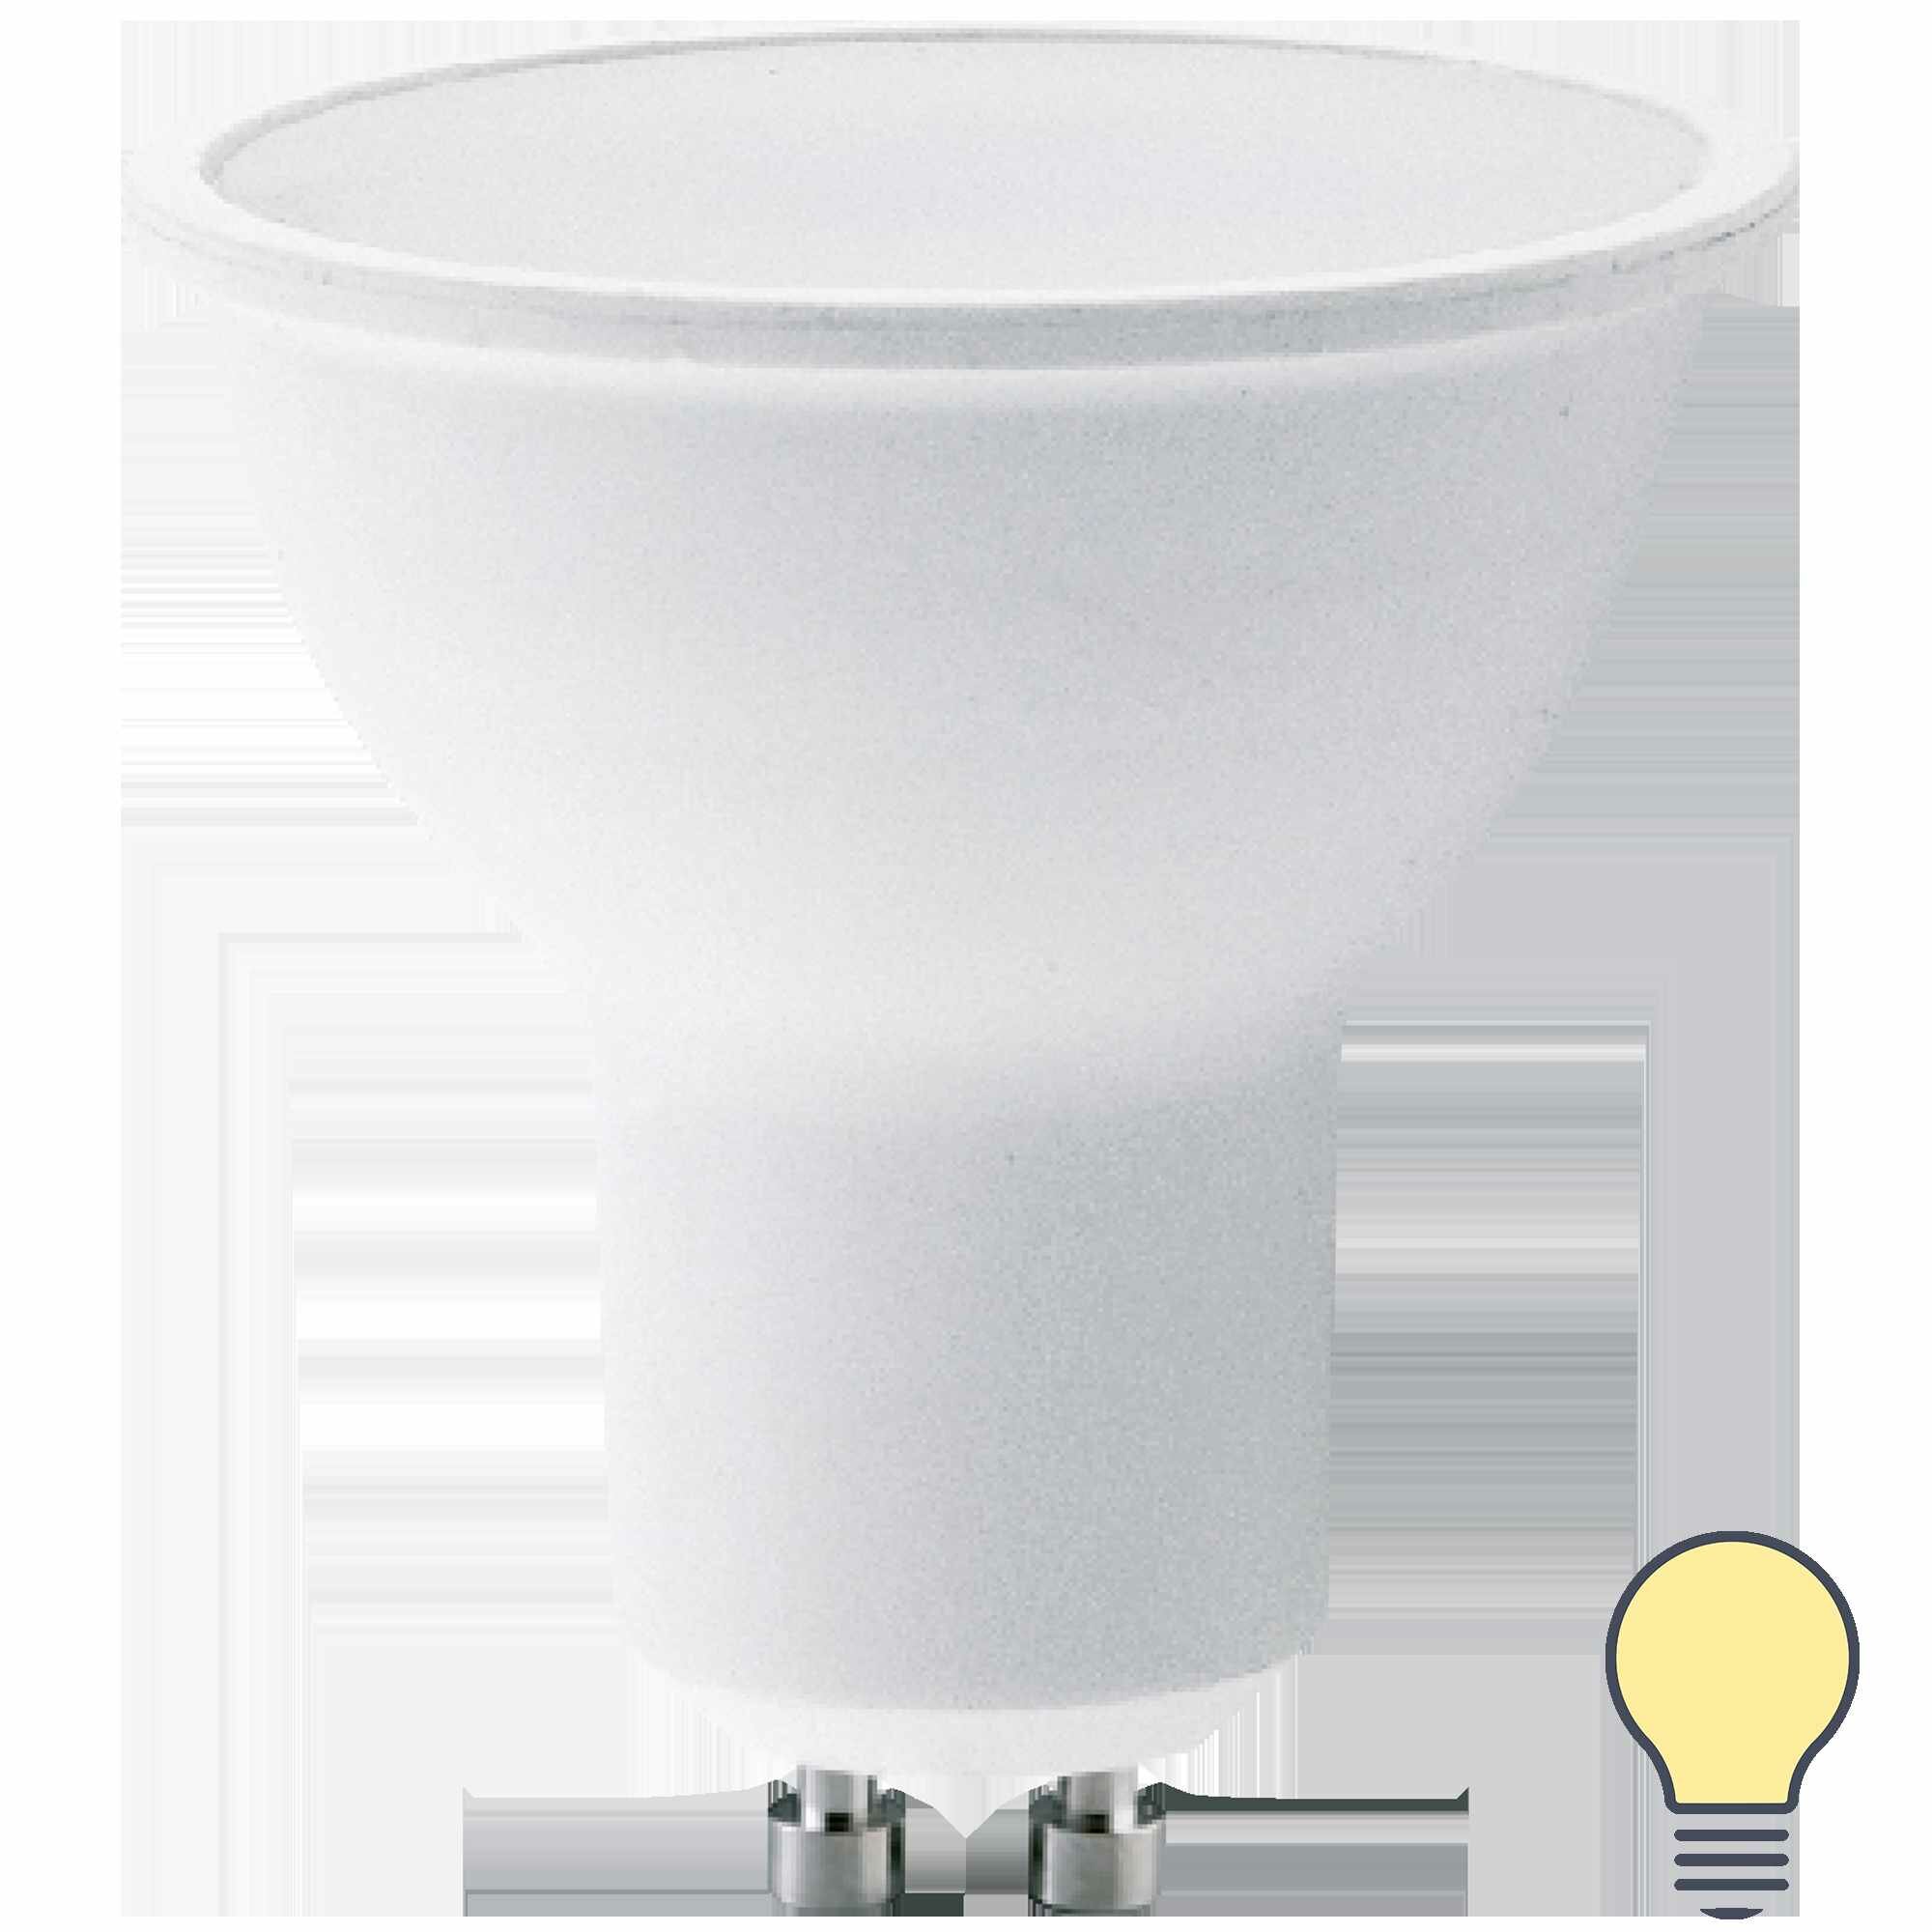 Лампа светодиодная Lexman GU10 175-250 В 7 Вт спот матовая 700 лм теплый белый свет